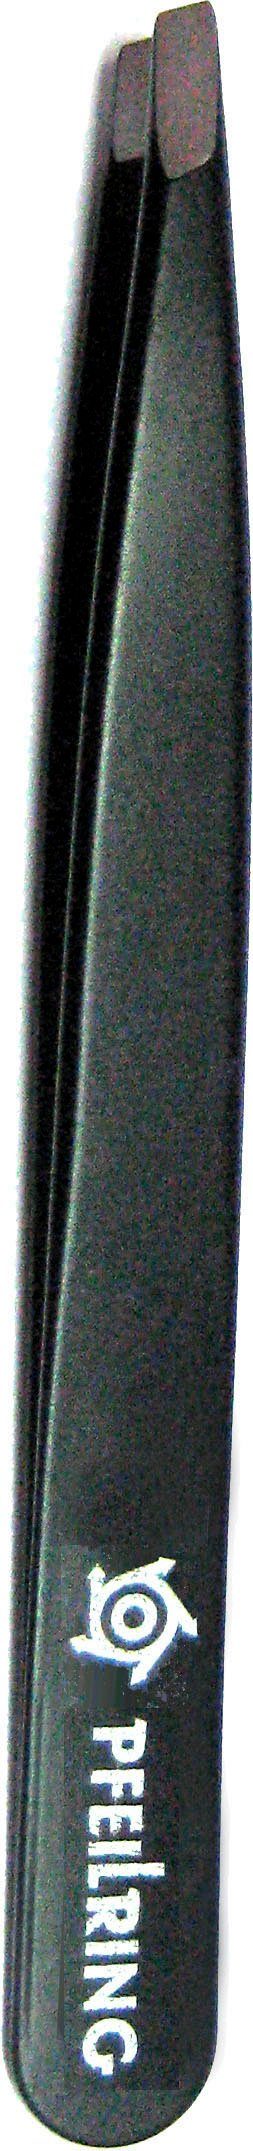 rostfrei schwarz 9,7cm, Pinzette, PFEILRING